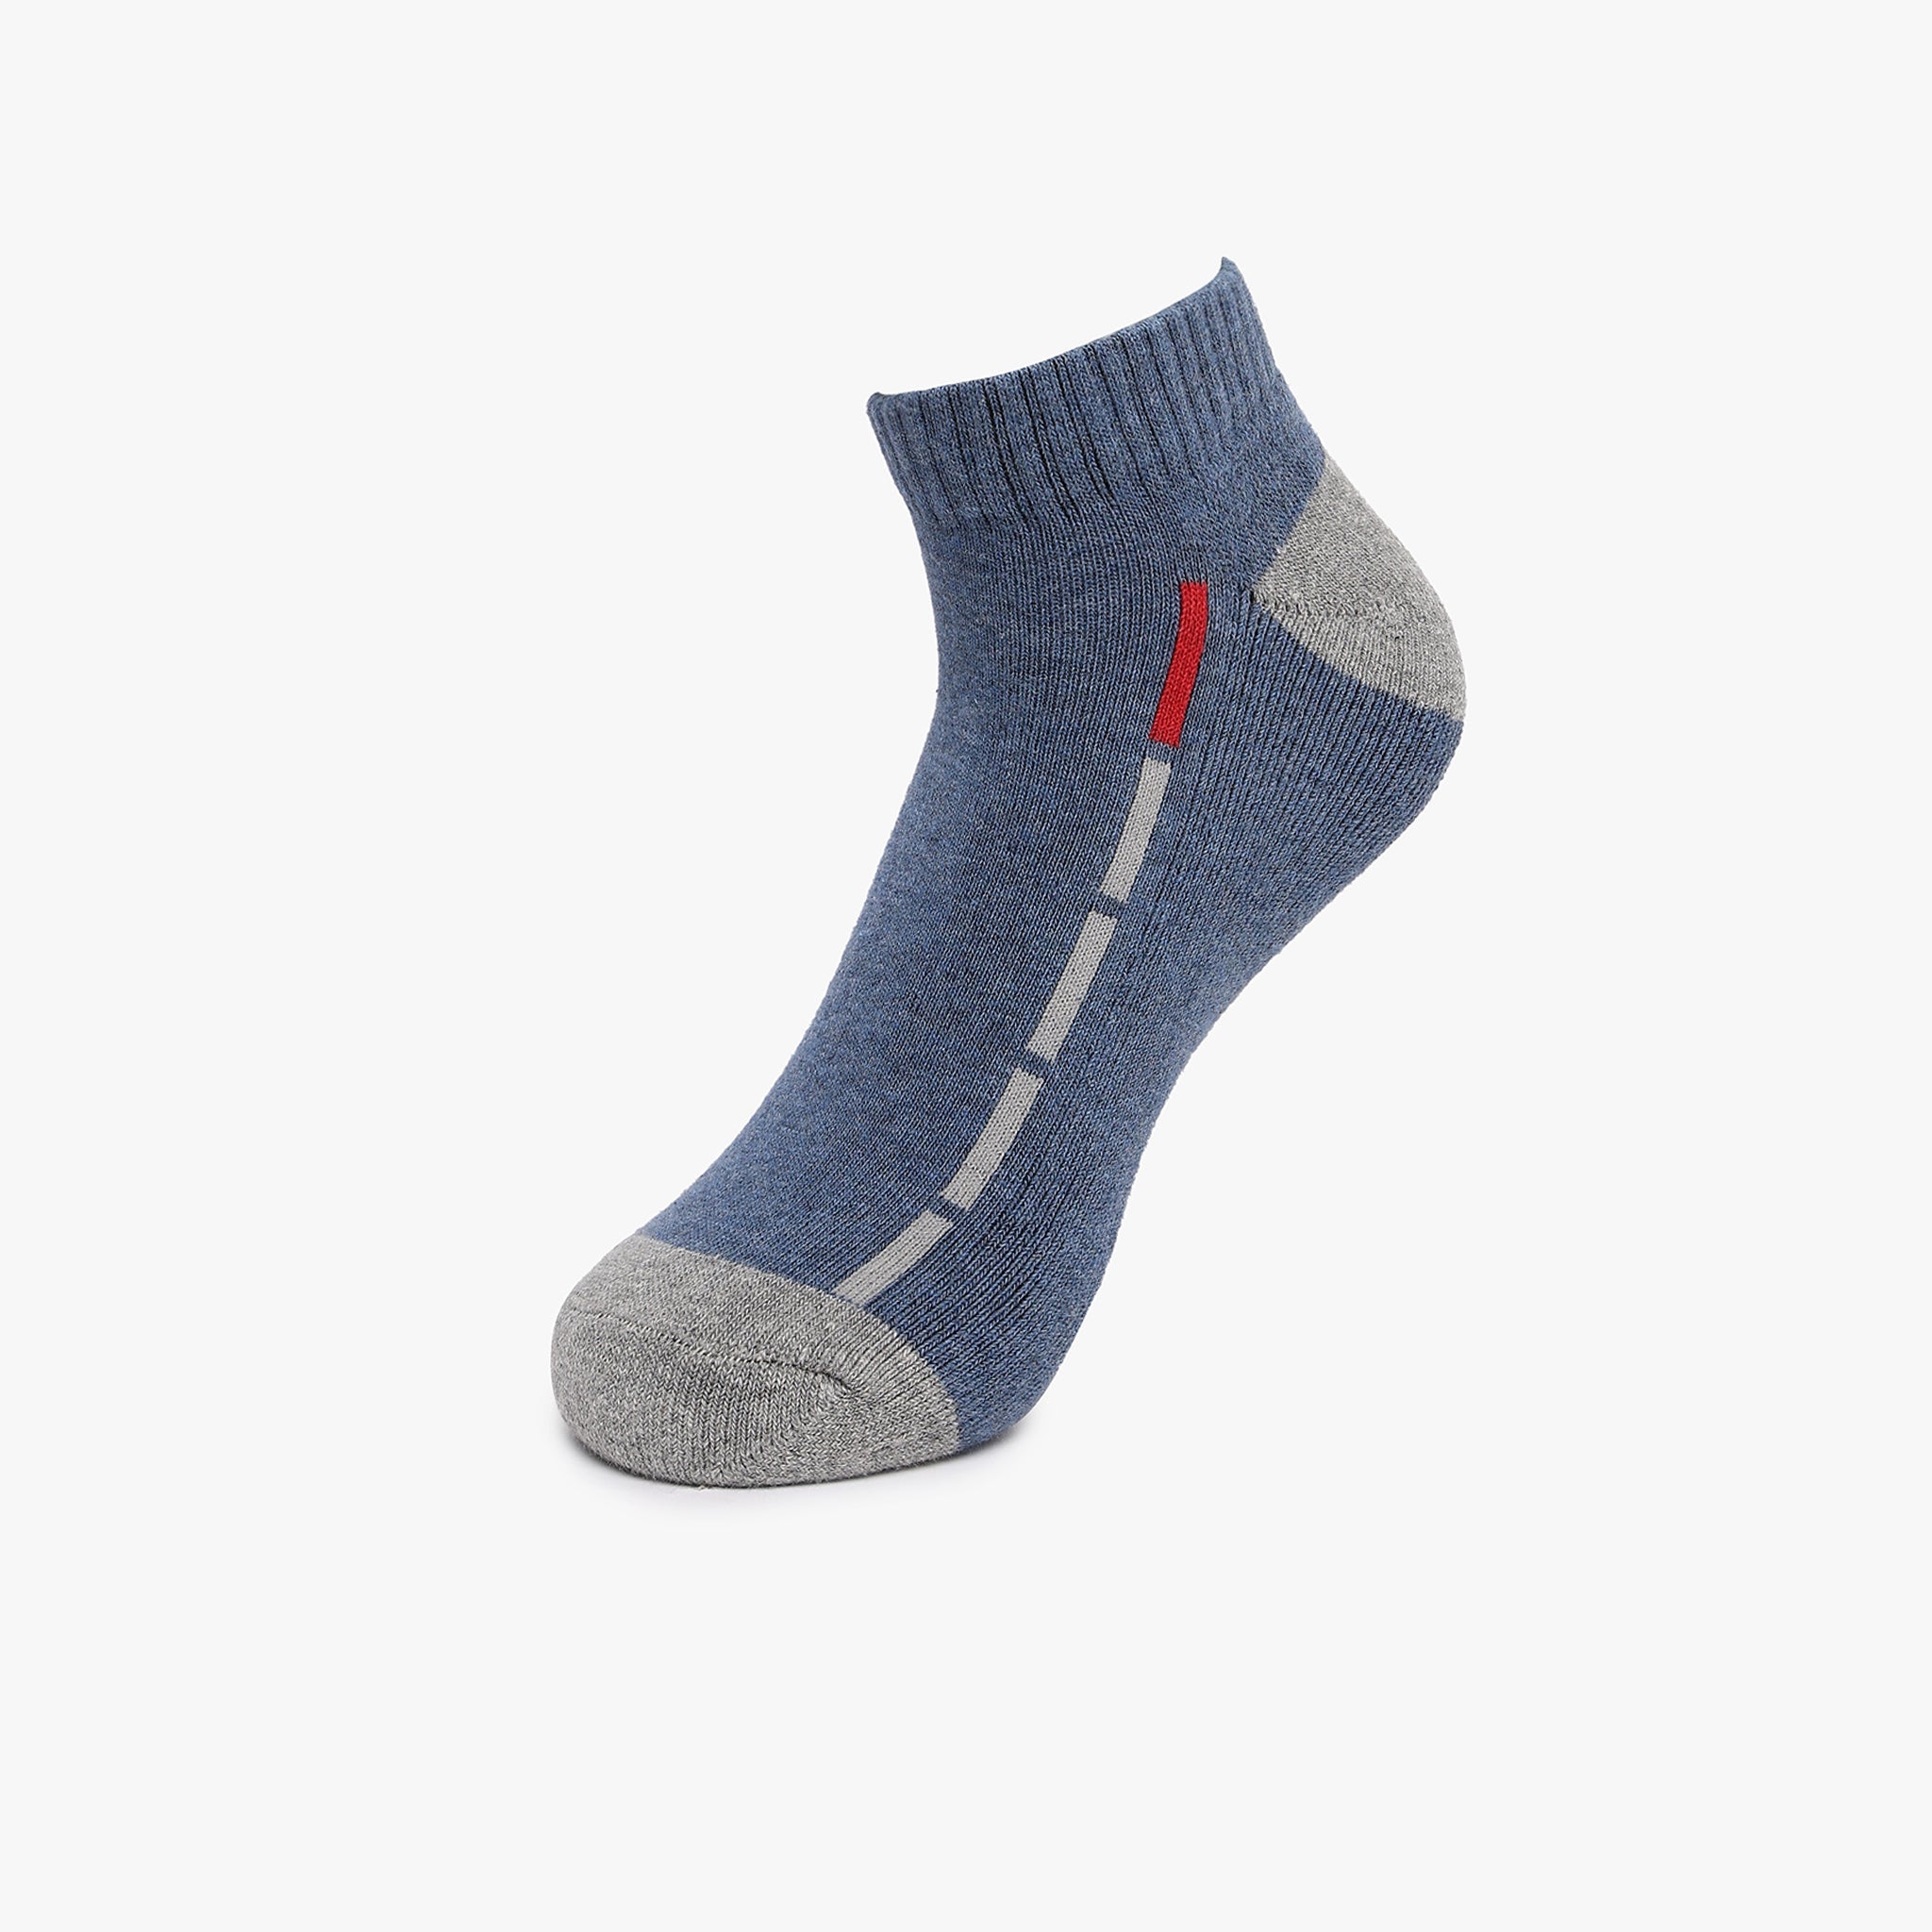 Mens Cotton Ankle Length Socks